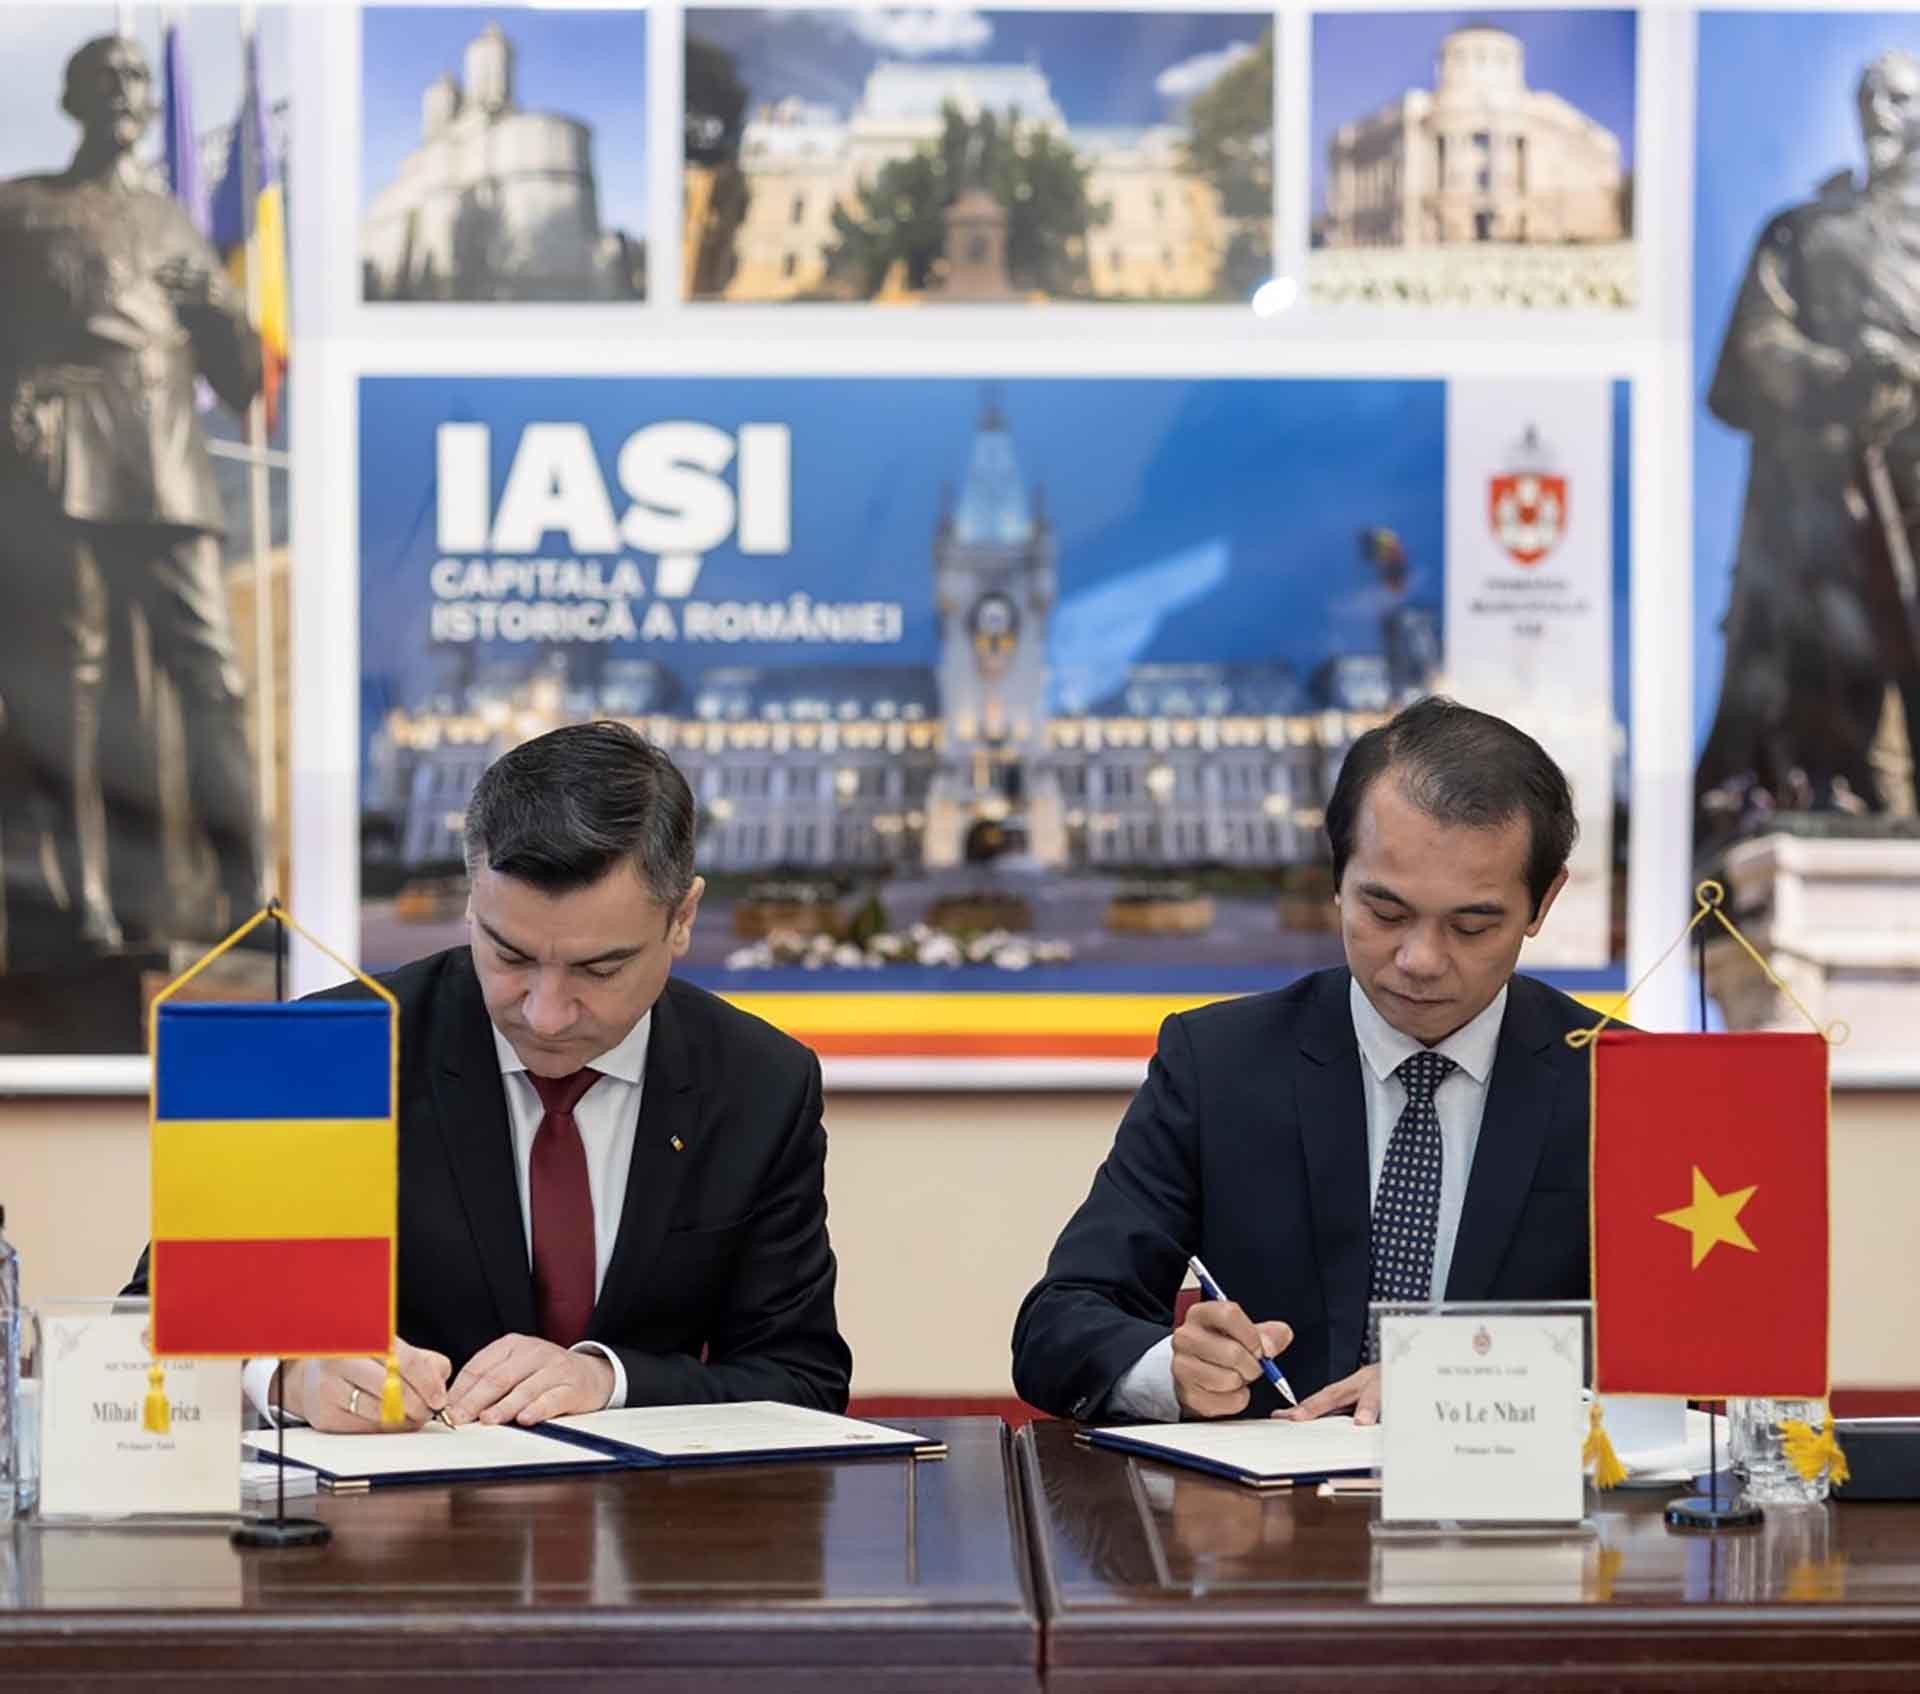 Chủ tịch UBND thành phố Huế Võ Lê Nhật, và Thị Trưởng thành phố Iasi Mihai Chirika, kí thỏa thuận hợp tác.